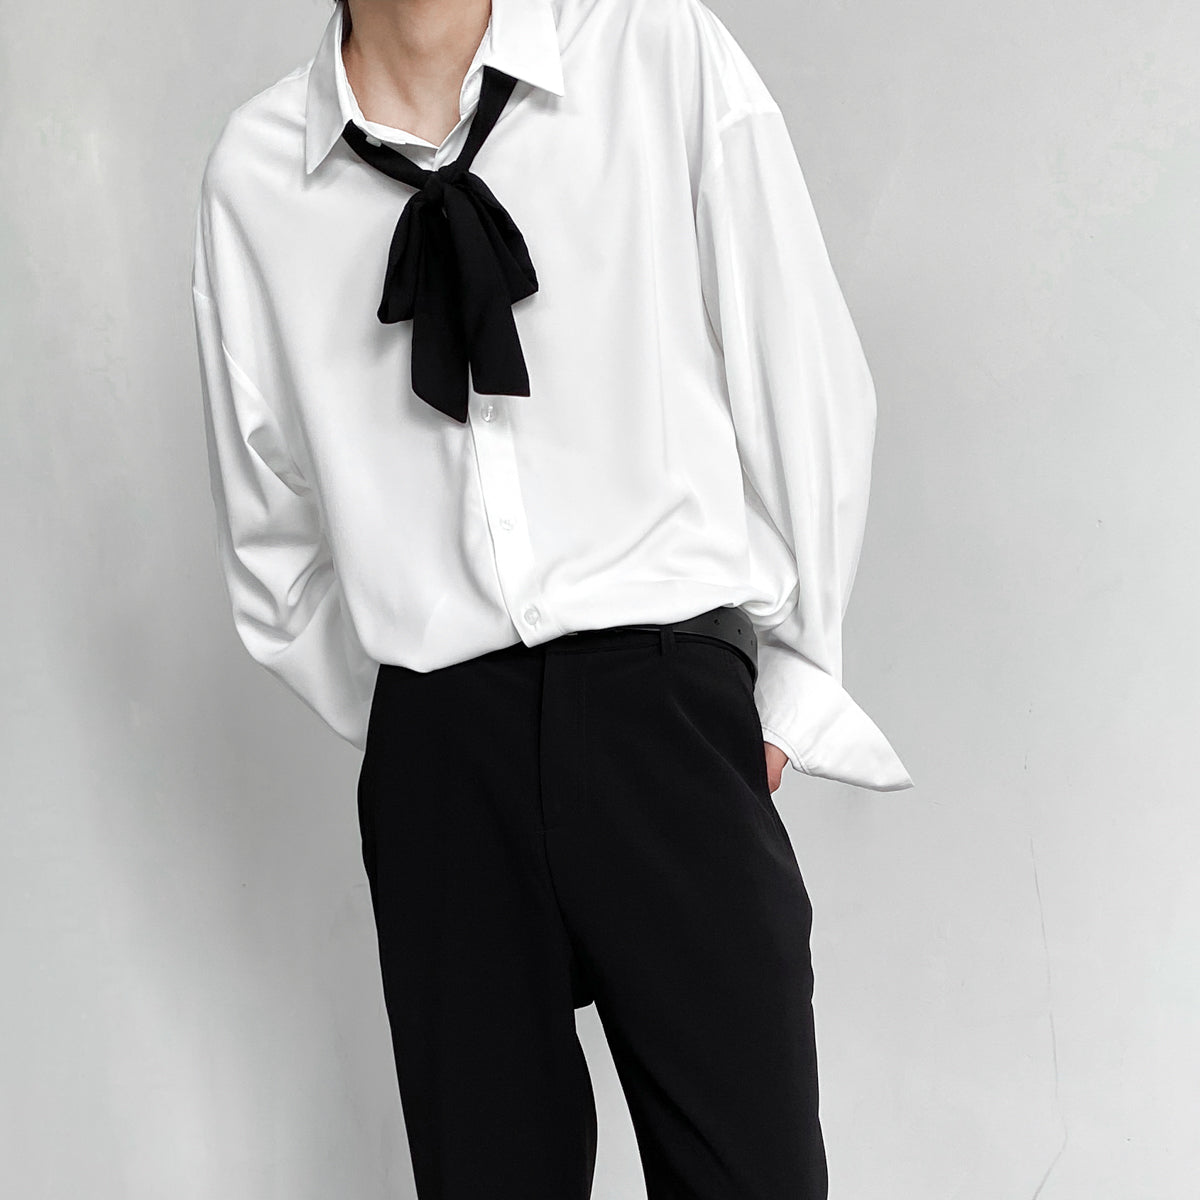 リボン付きシャツ(SH466) - 韓国メンズファッション通販サイト Jacob's warehouse